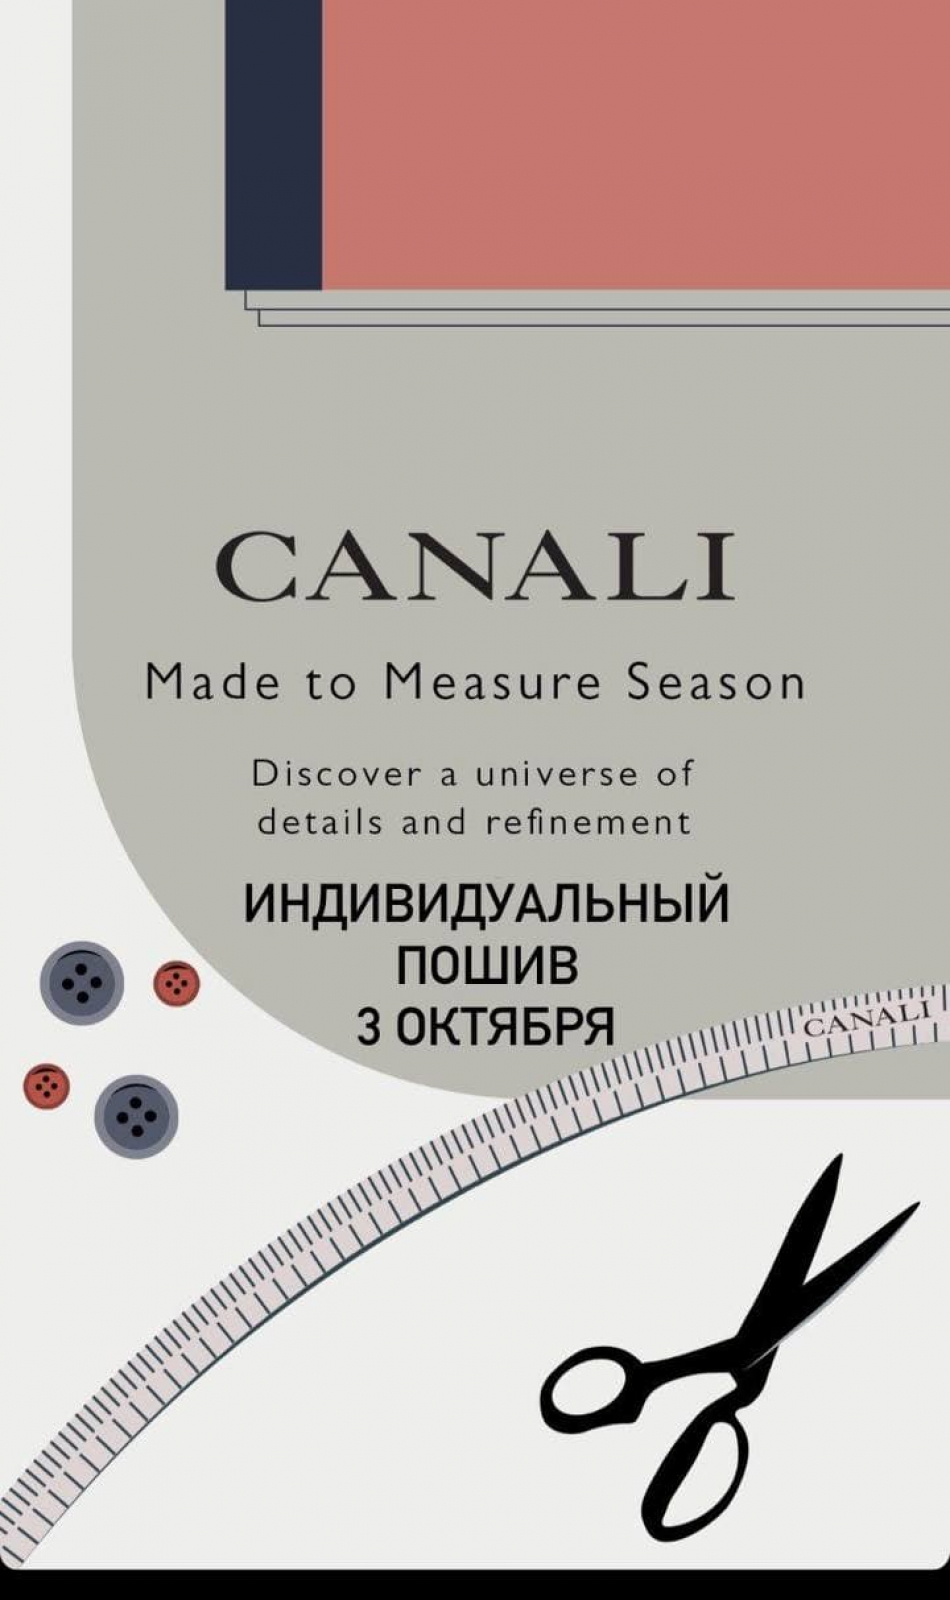 Canali - Индивидуальный пошив